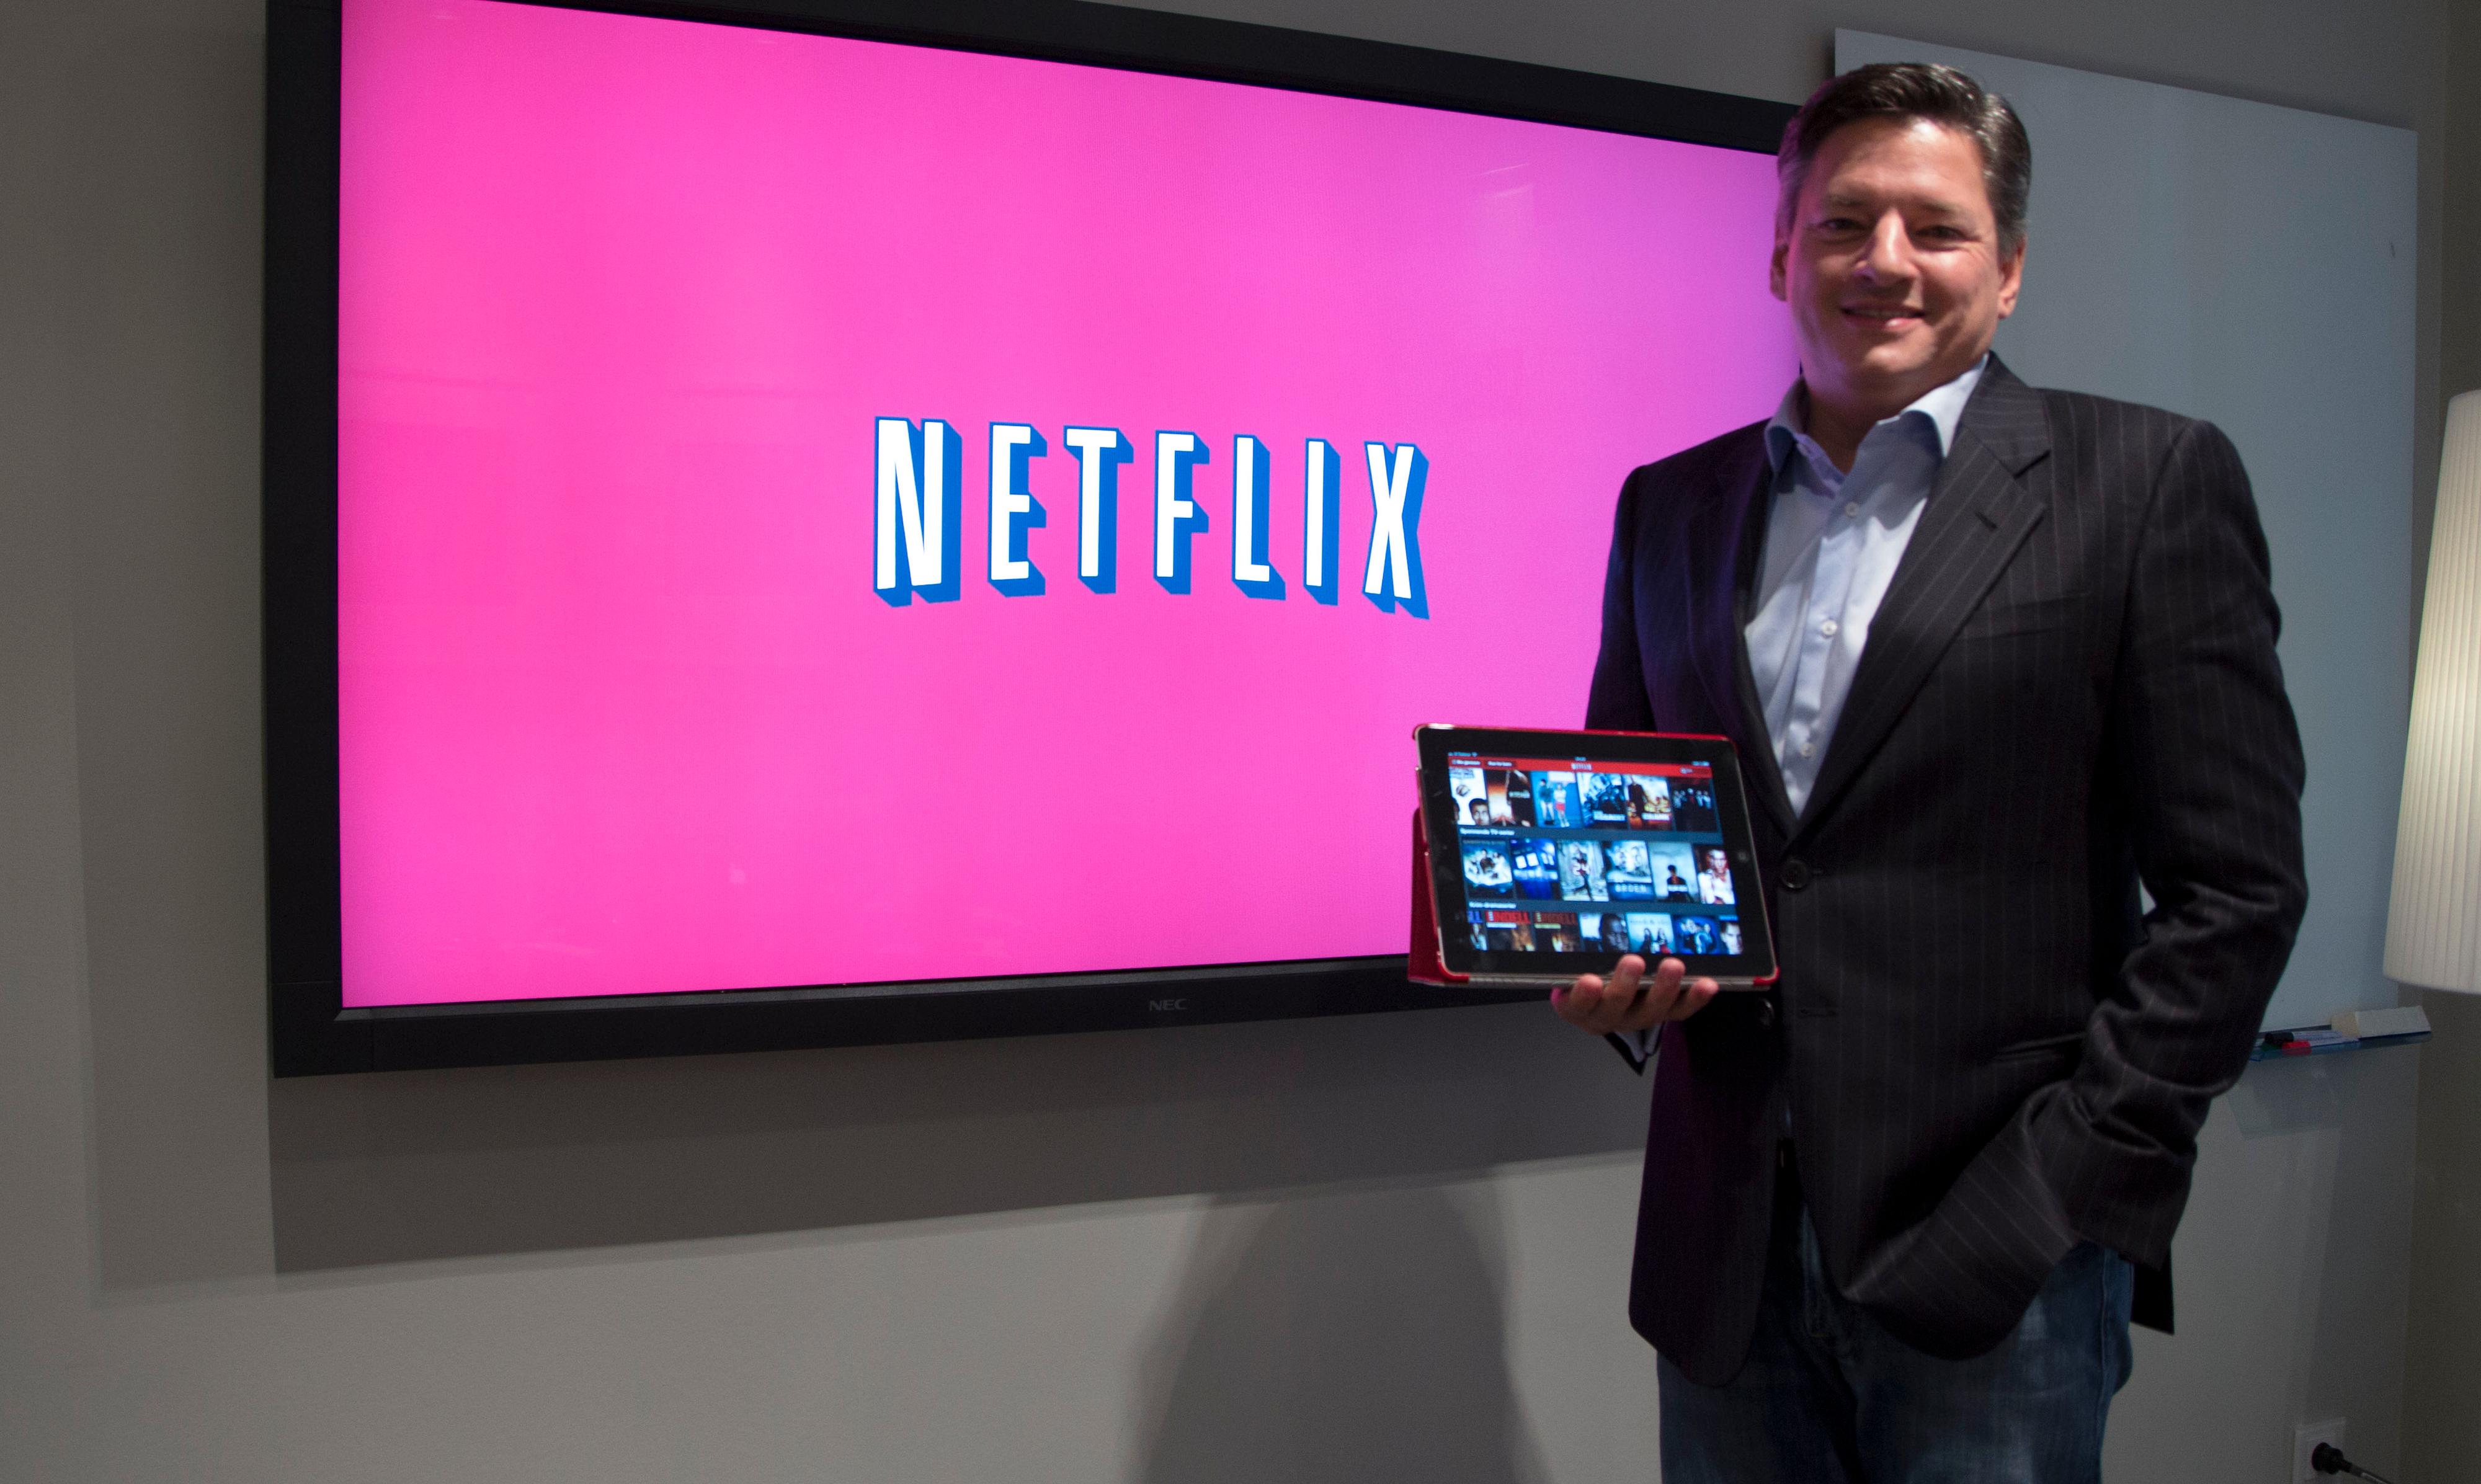 Ted Sarandos er innholdsansvarlig hos Netflix, og hadde mye å si om utdaterte distribusjonsmodeller og selskapets egne visjoner.Foto: Niklas Plikk, Hardware.no